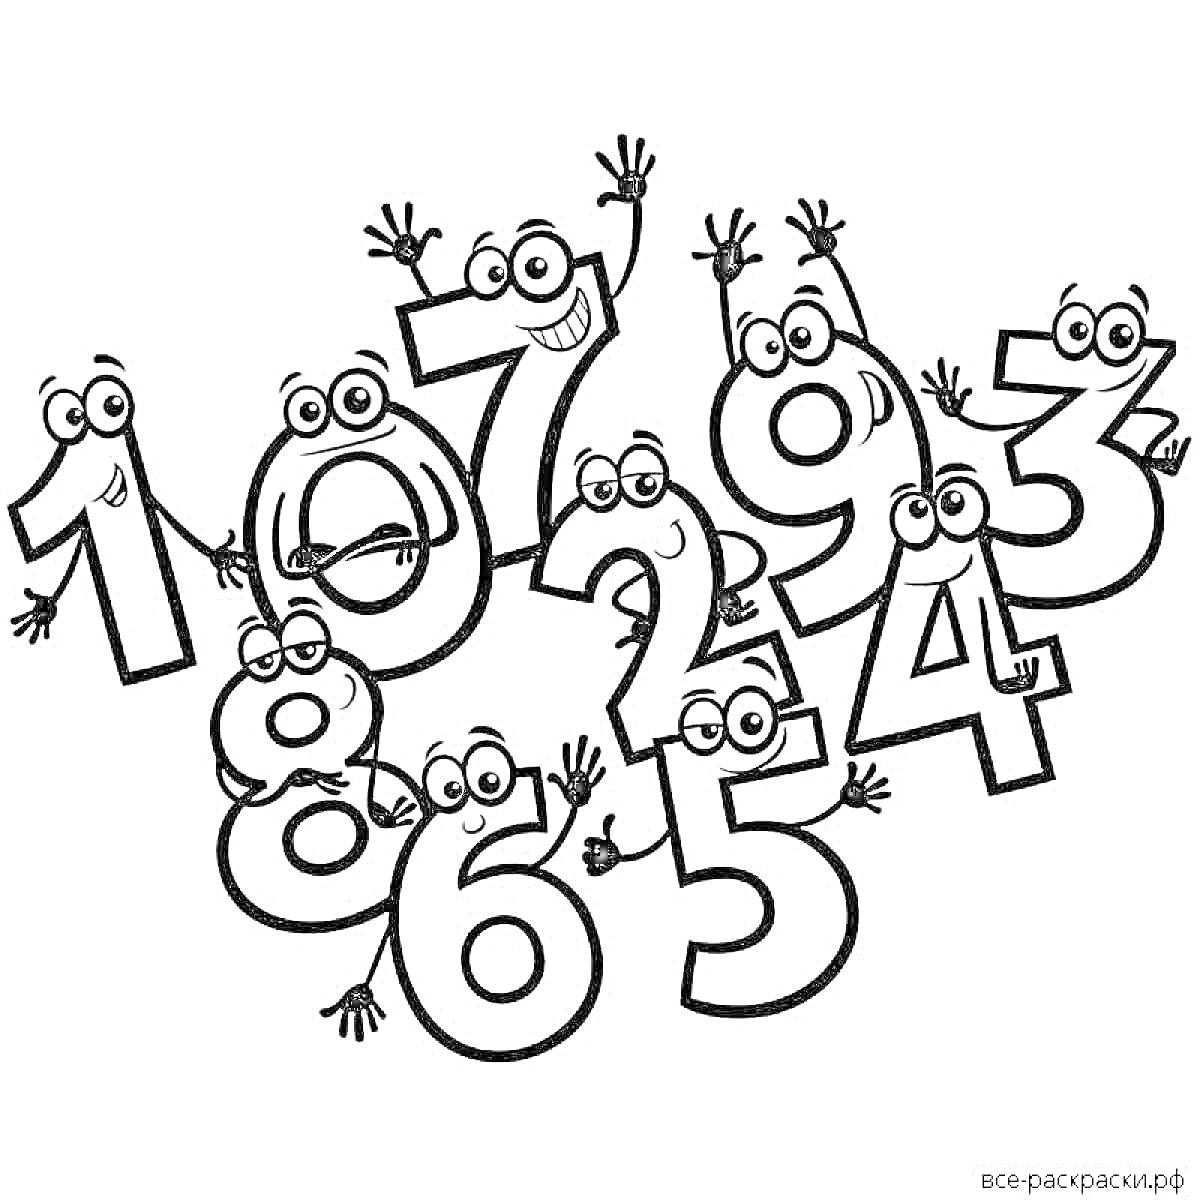 Раскраска Веселые цифры от 1 до 9 с лицами и руками